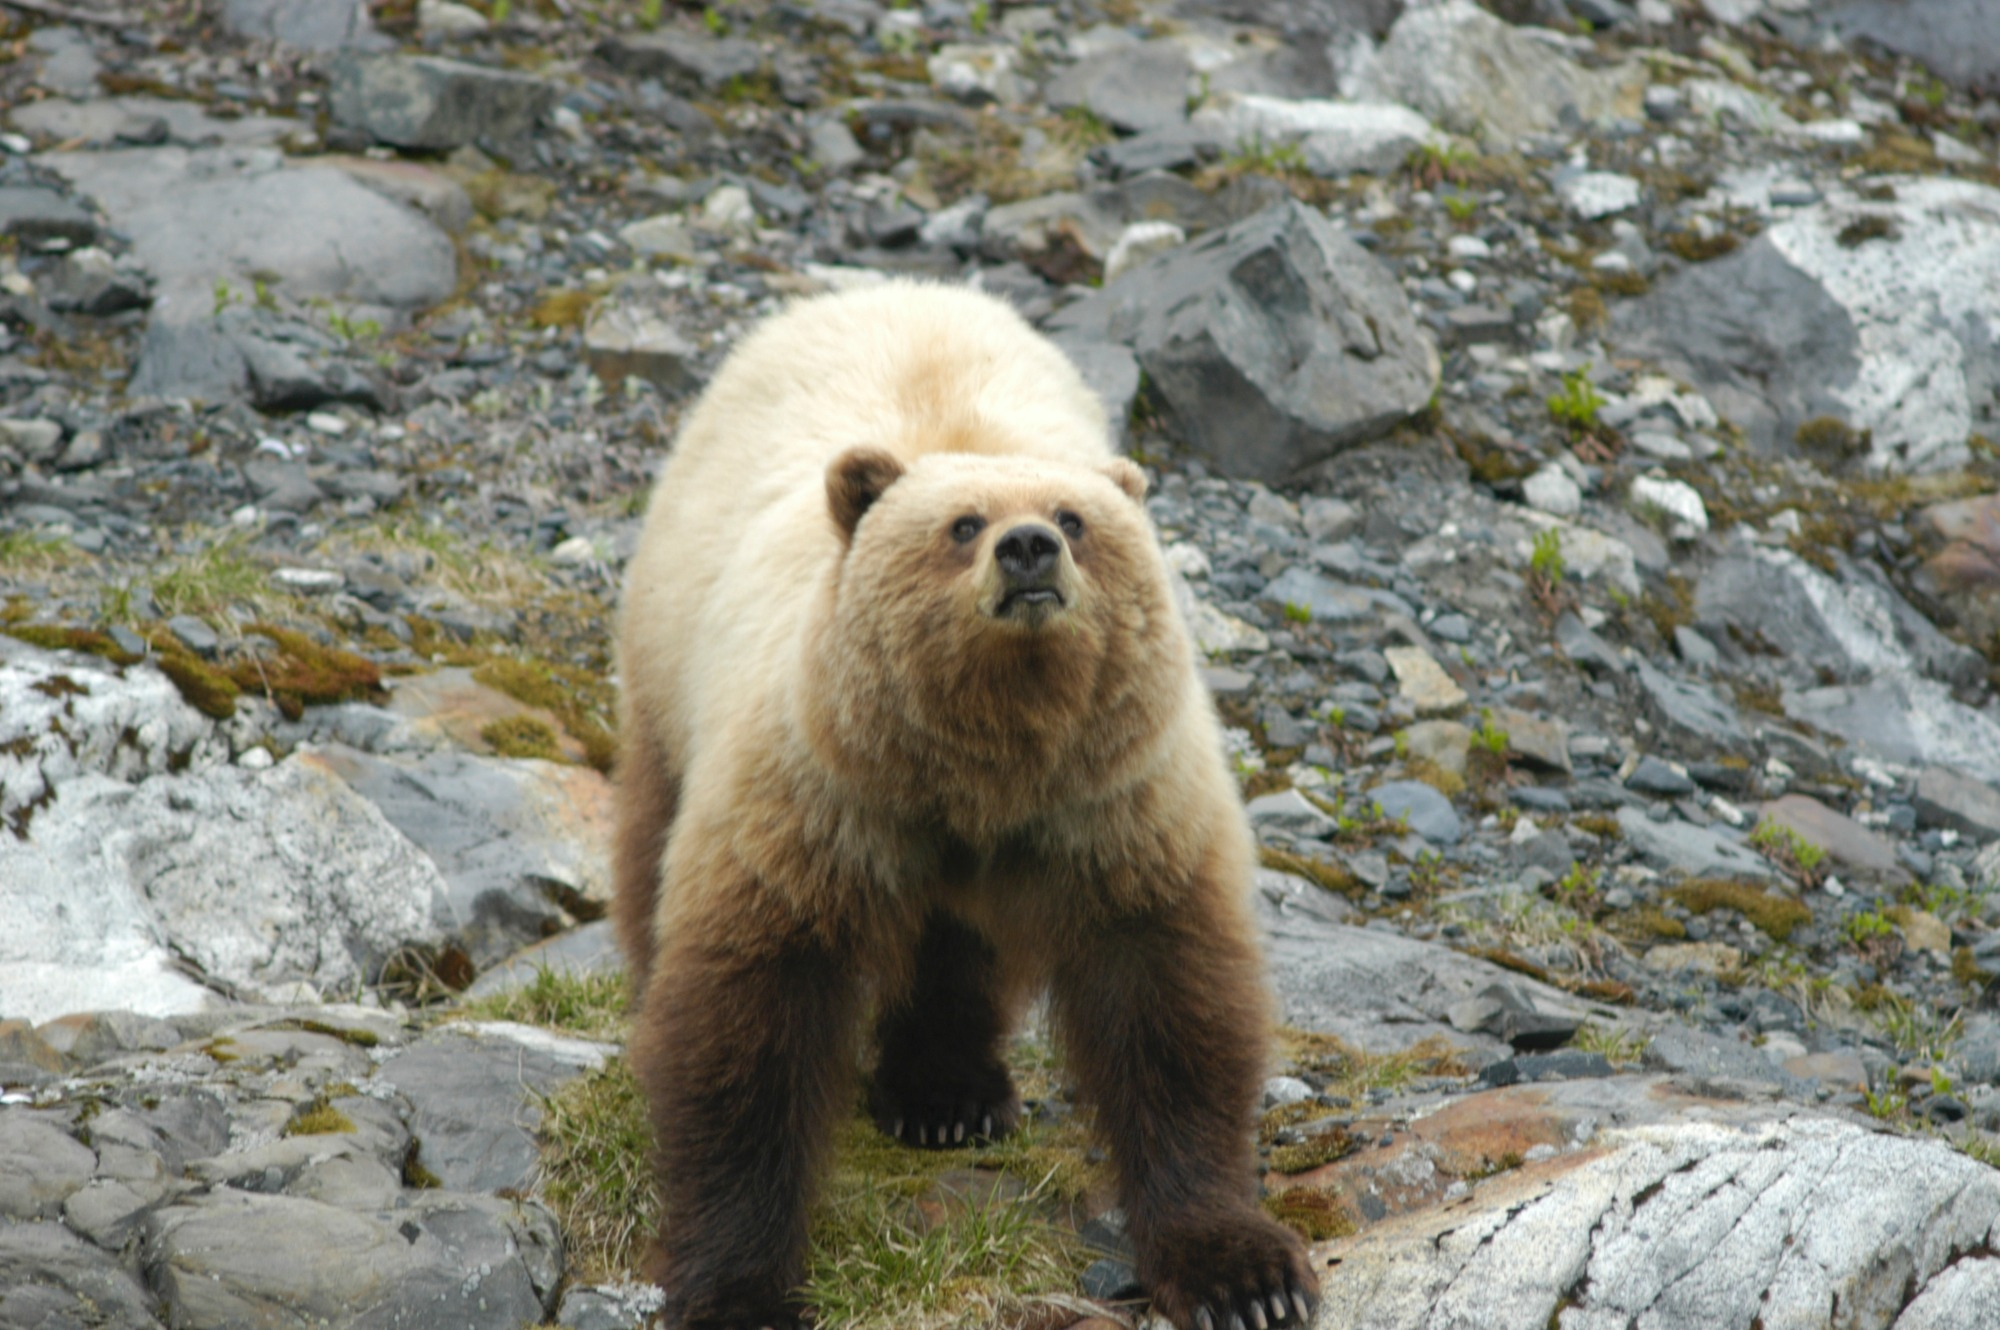 A brown bear in Alaska's Glacier Bay National Park.